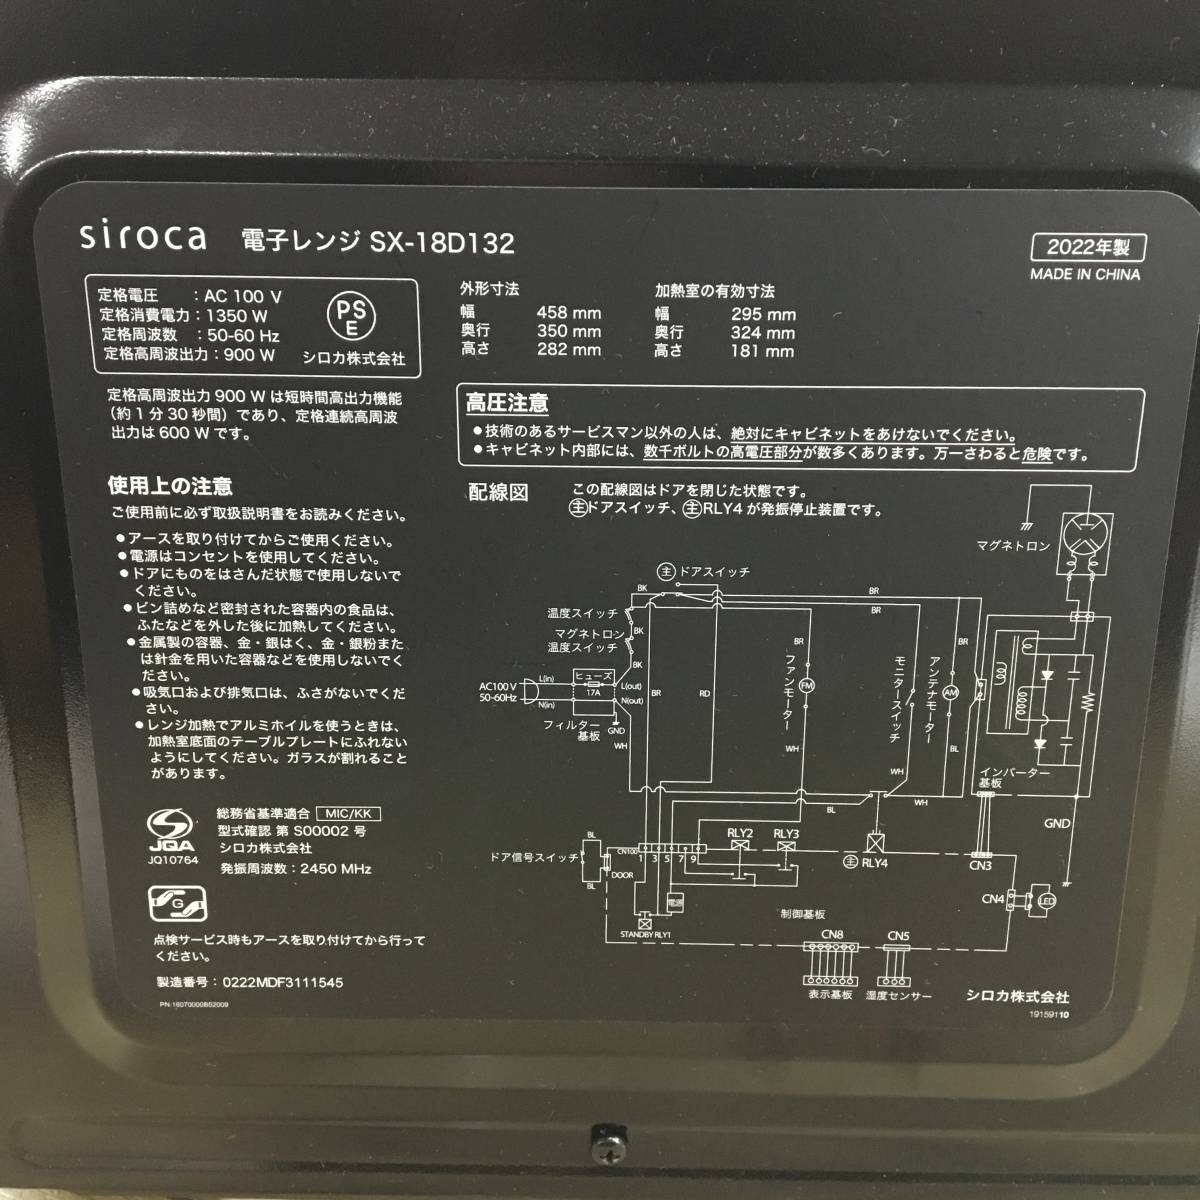 2022年製 美品 siroca シロカ 電子レンジ SX-18D132 動作確認済 菊TK_画像2